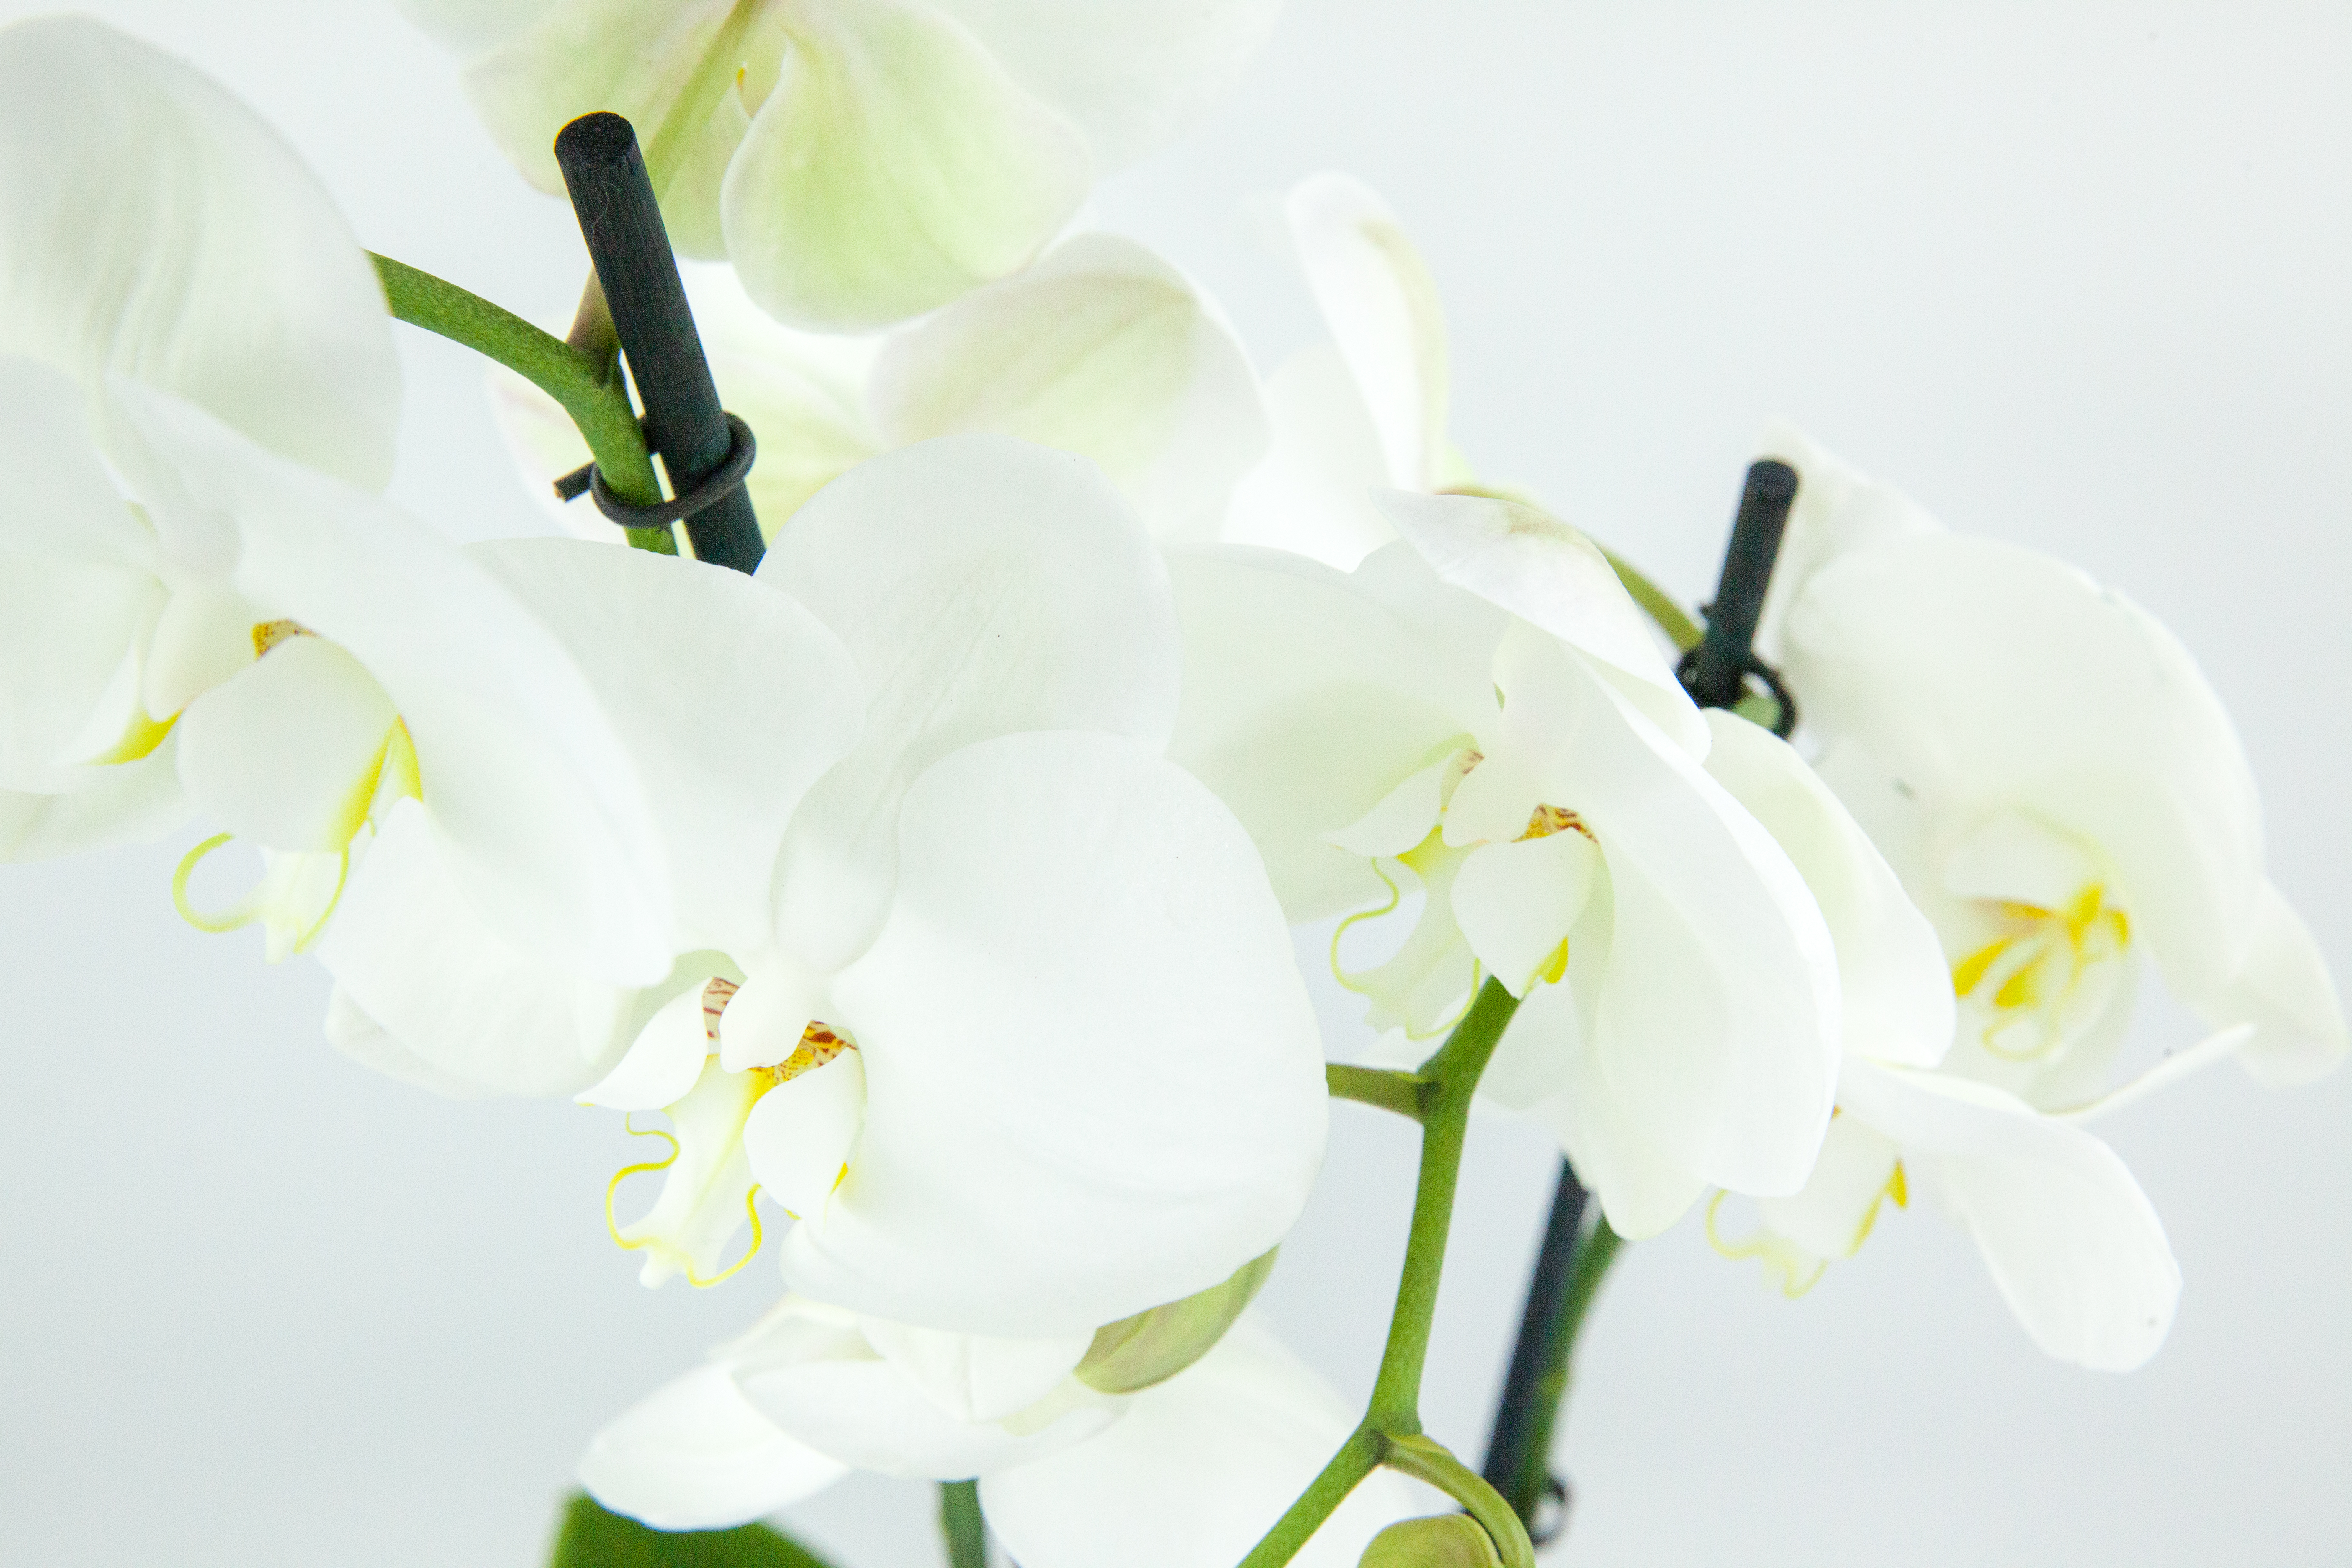 Orchidée avec son cache pot - Le jardin de Mathilde